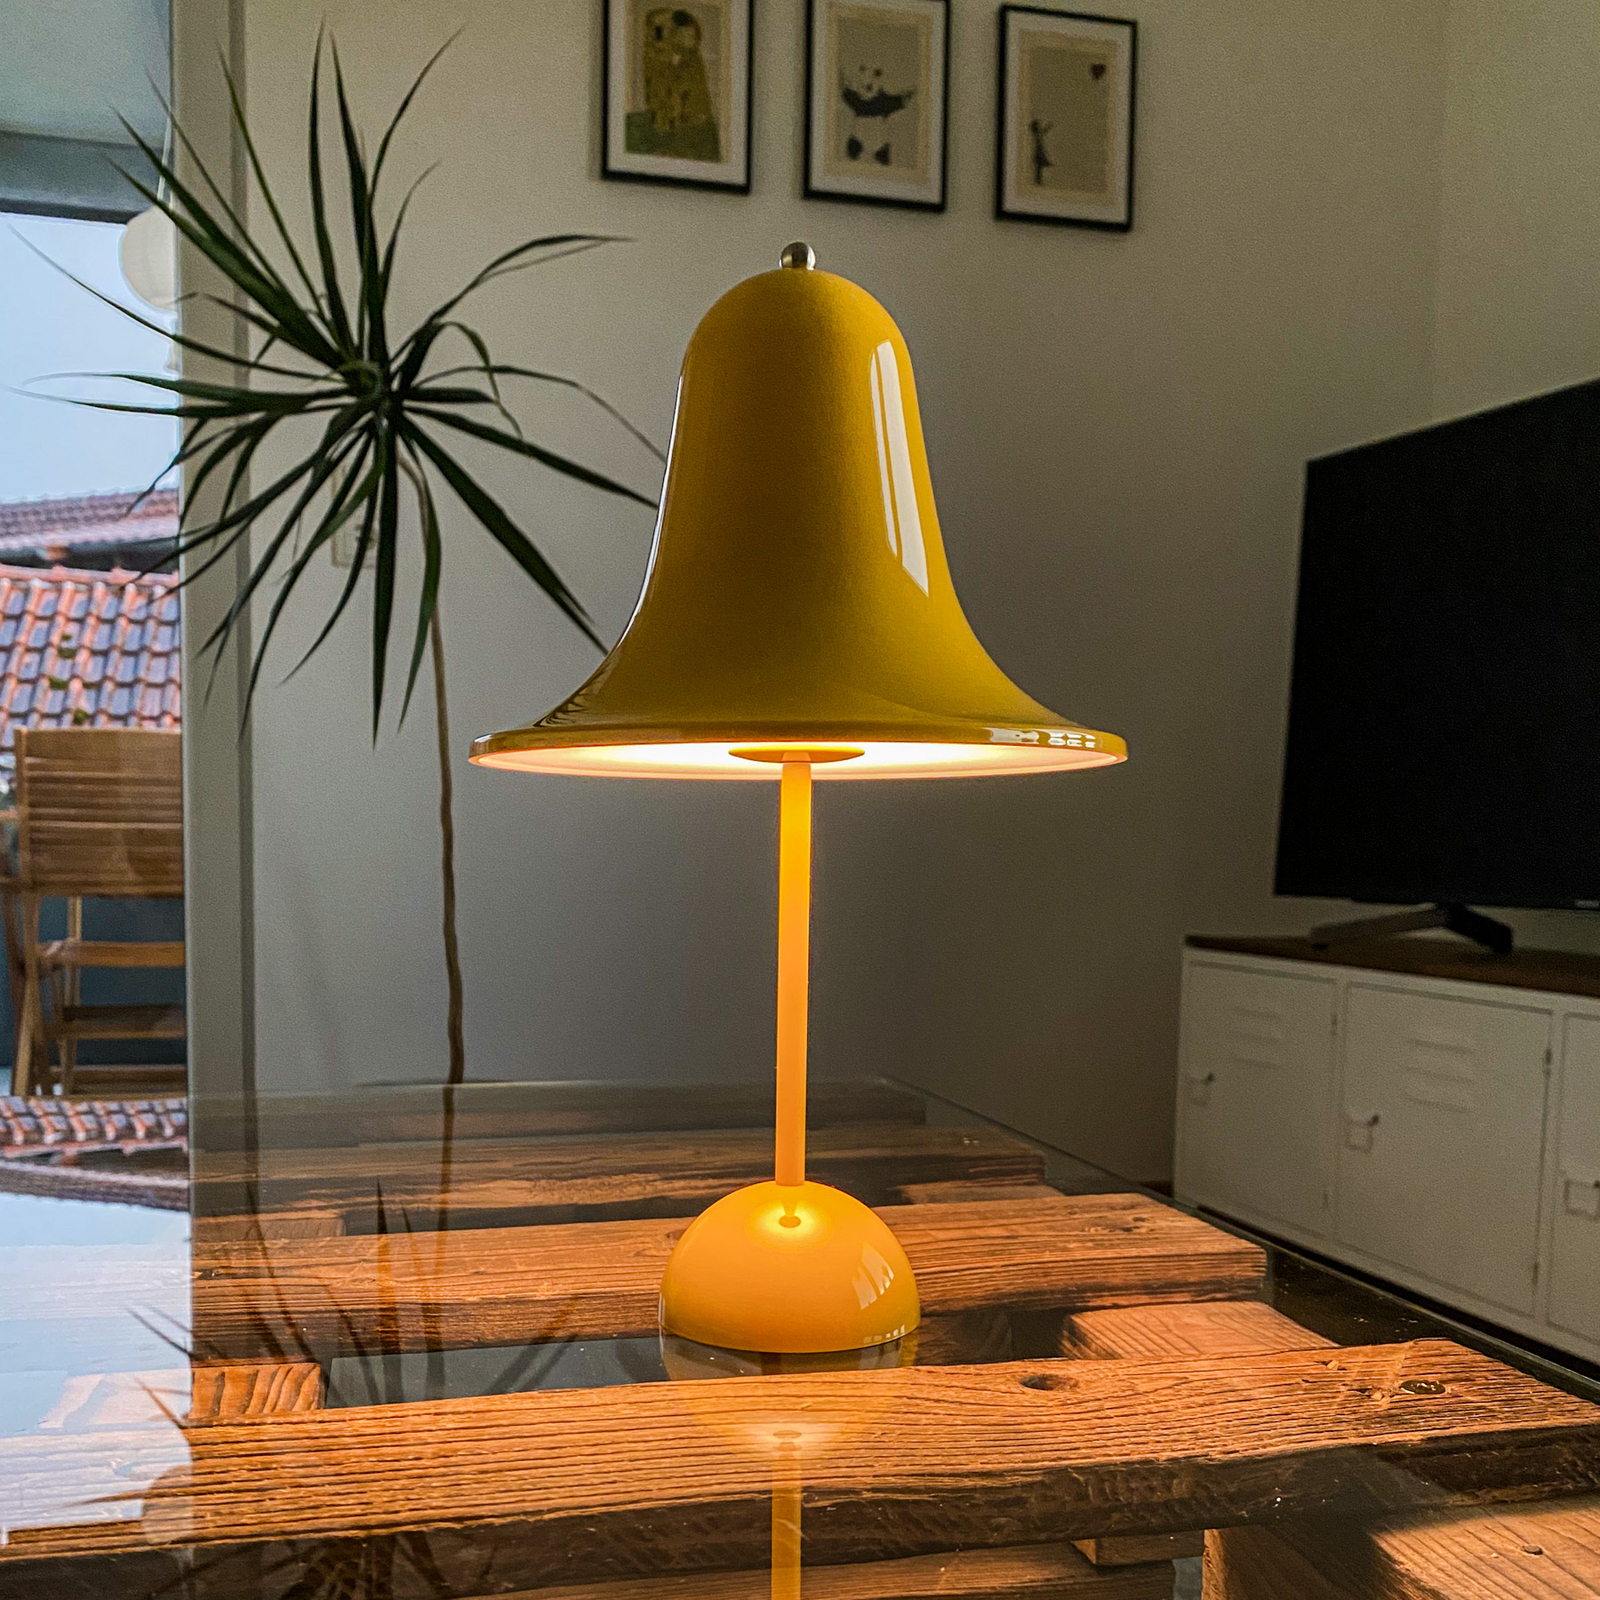 VERPAN Pantop lampada da tavolo giallo caldo